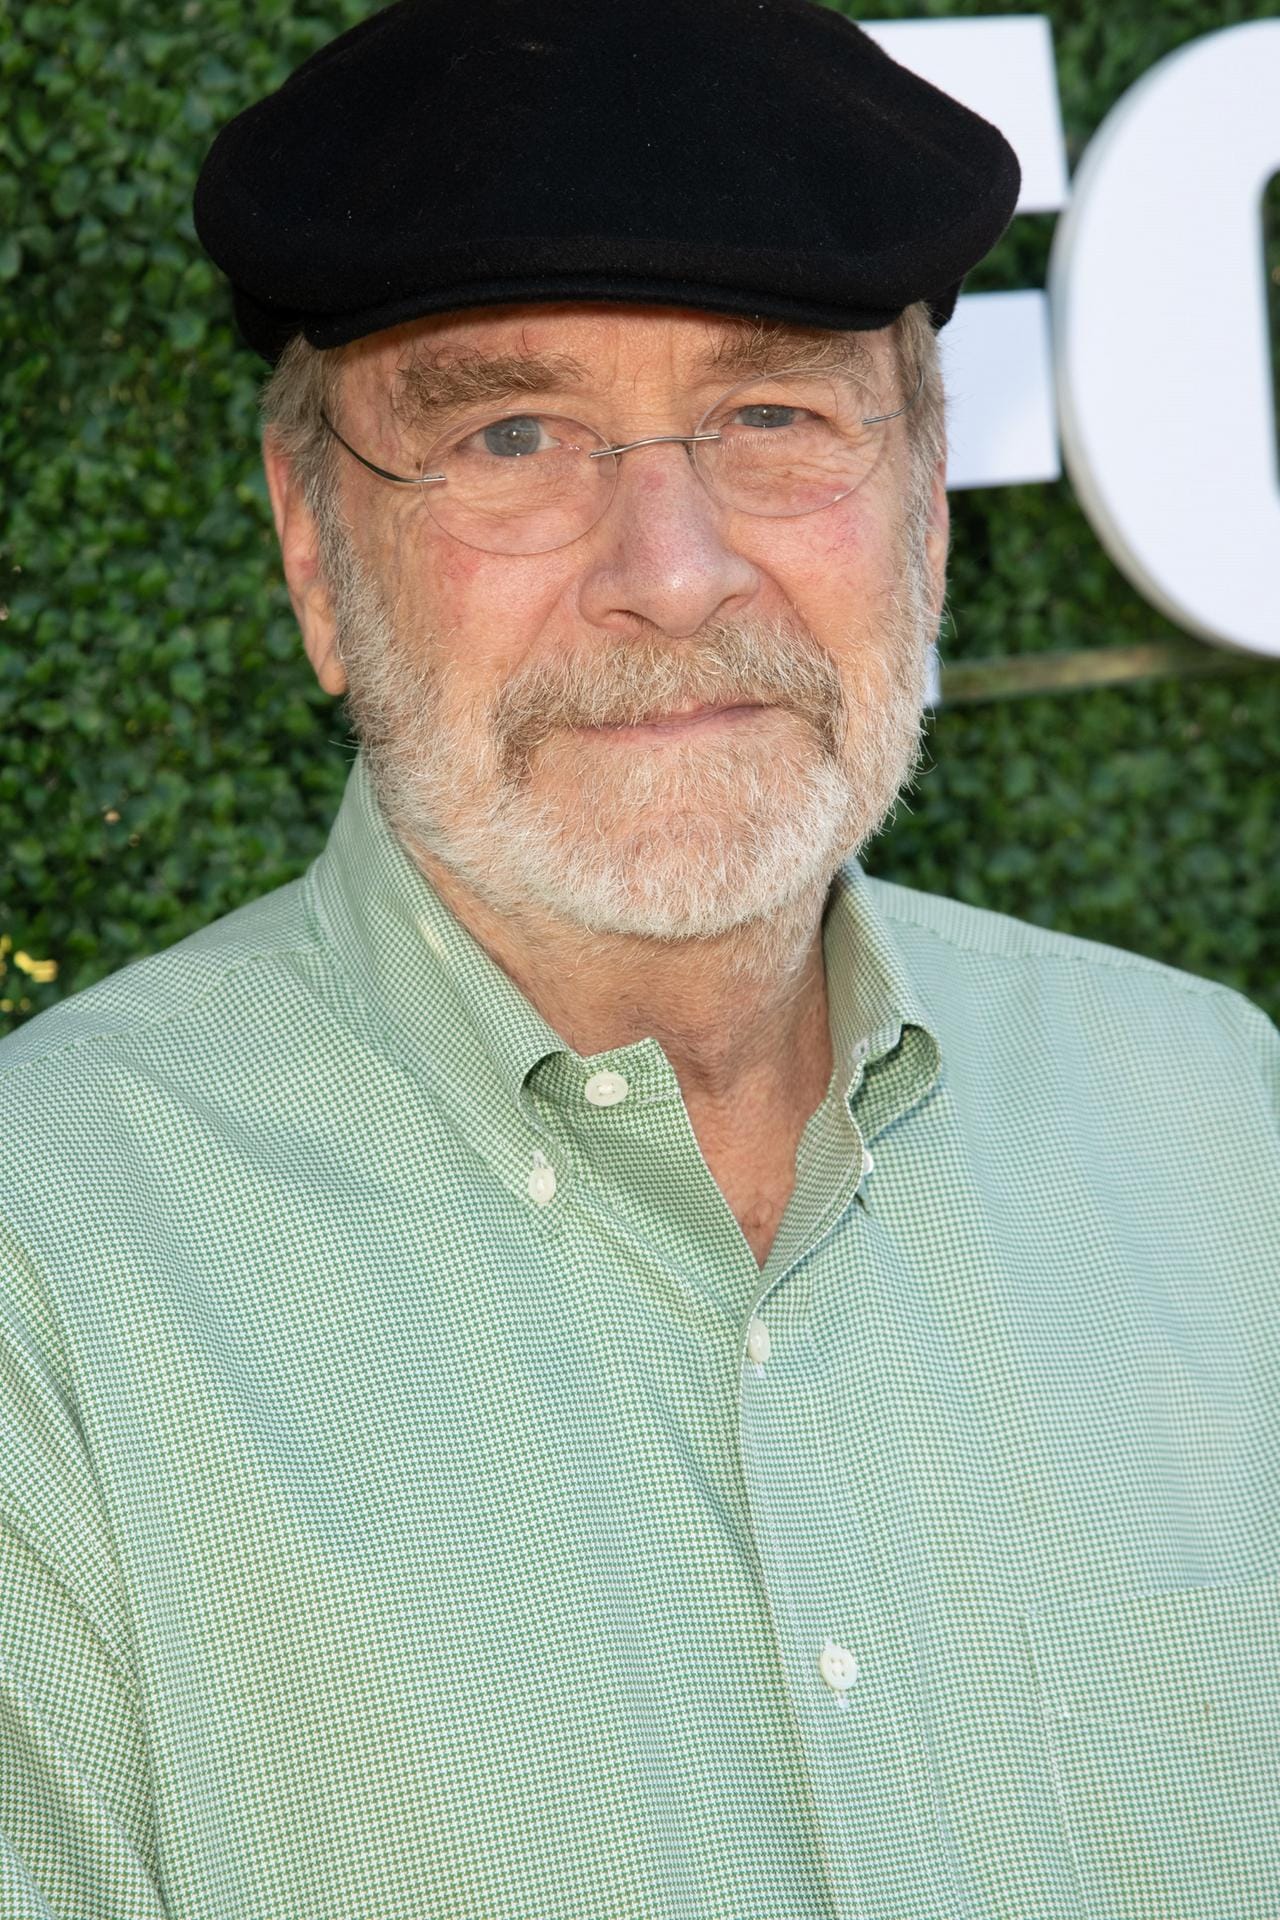 Martin Mull spielte den Schuldirektor von Sabrina. Kein Darsteller war danach so oft im TV zu sehen wie er. Mit 75 Jahren hat der Schauspieler mittlerweile in über 140 Produktionen mitgewirkt.